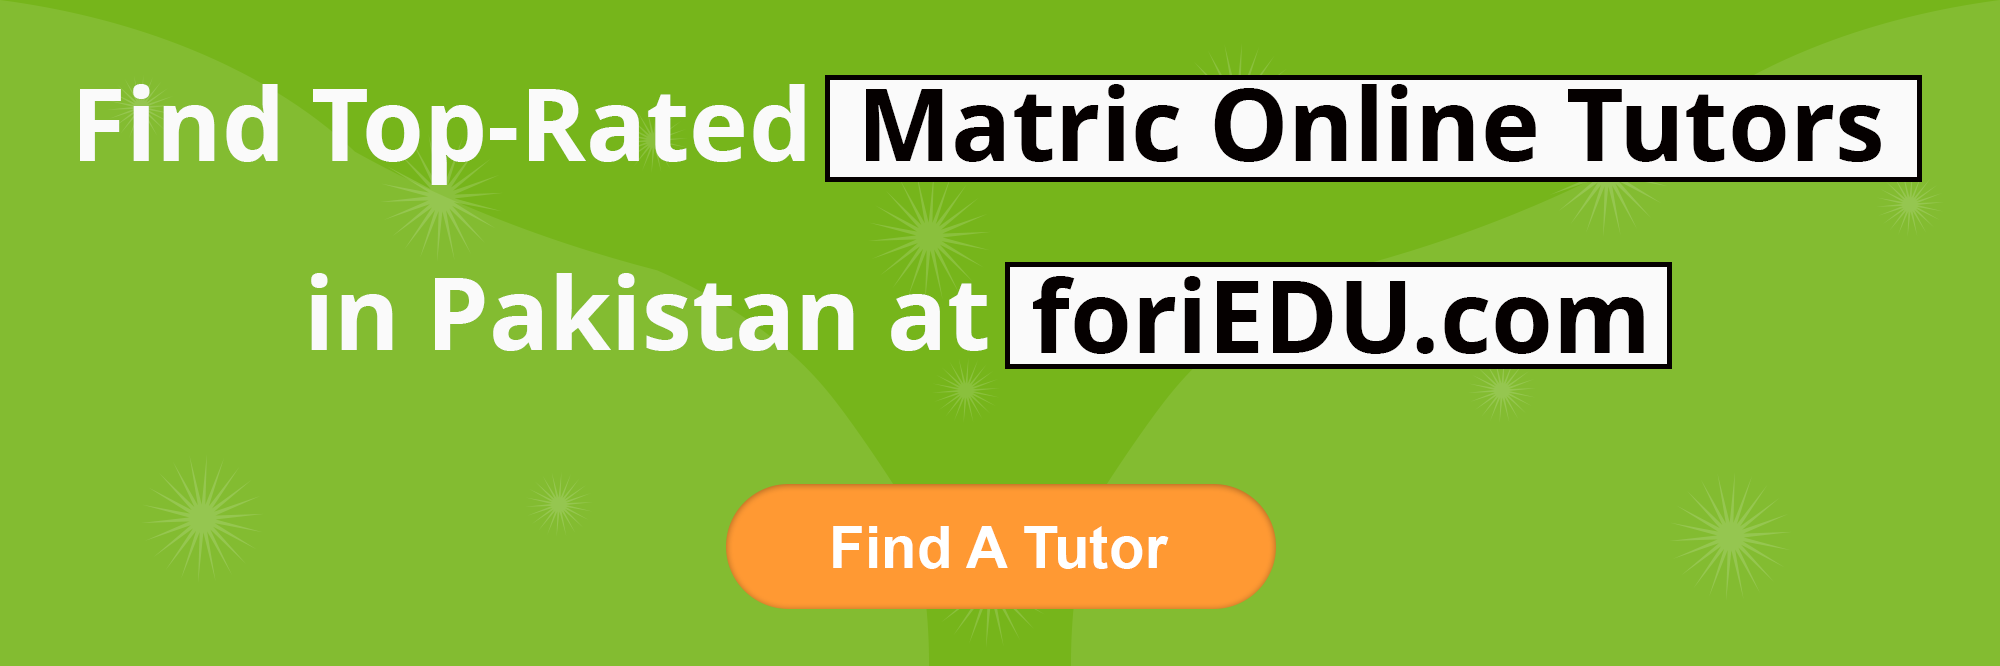 Matric Online Tutors in Pakistan 4